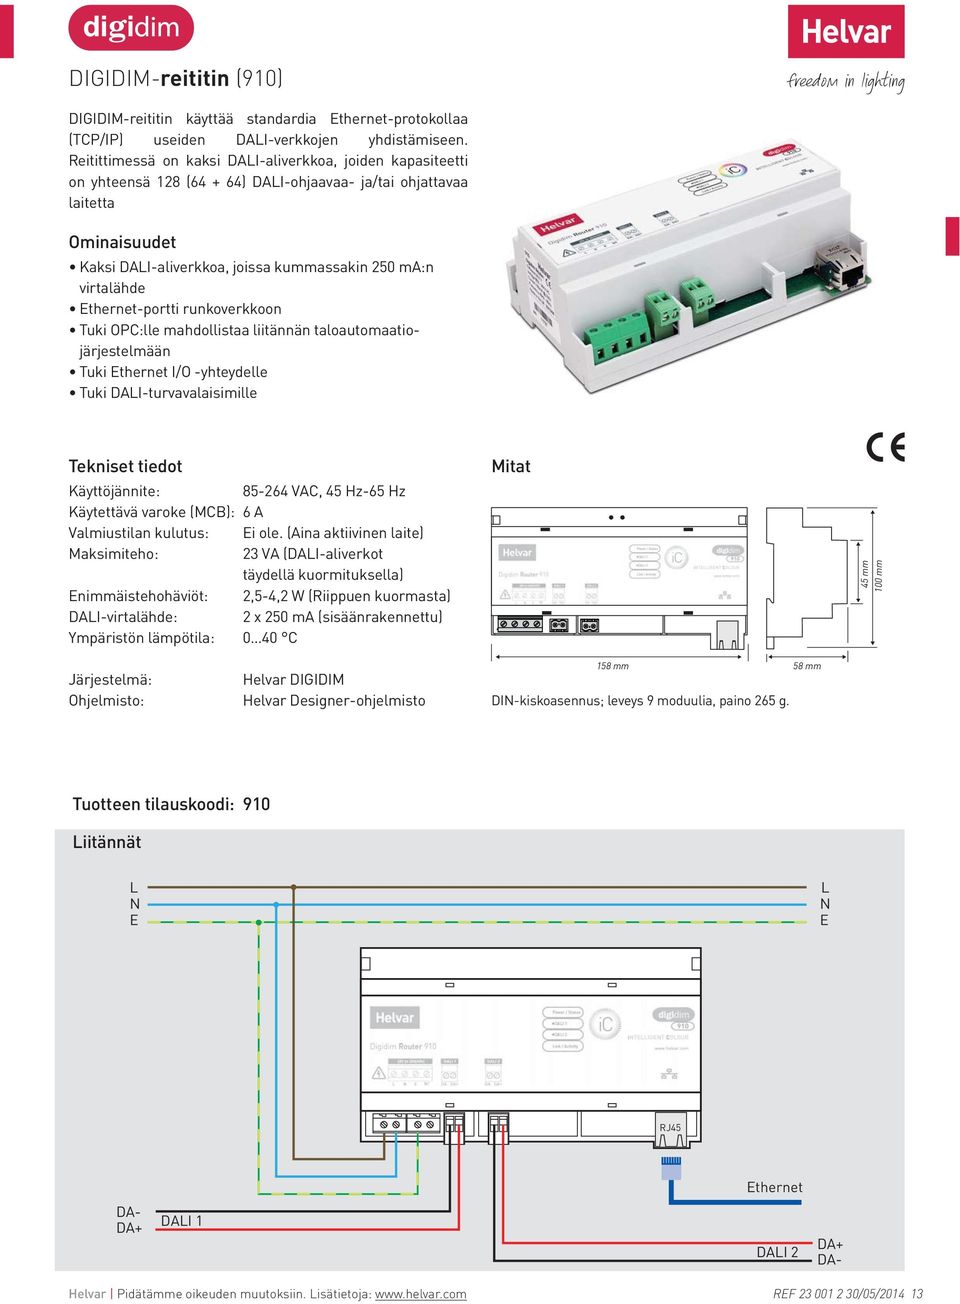 Ethernet-portti runkoverkkoon Tuki OPC:lle mahdollistaa liitännän taloautomaatiojärjestelmään Tuki Ethernet I/O -yhteydelle Tuki DAI-turvavalaisimille Tekniset tiedot Käyttöjännite: 85-264 VAC, 45